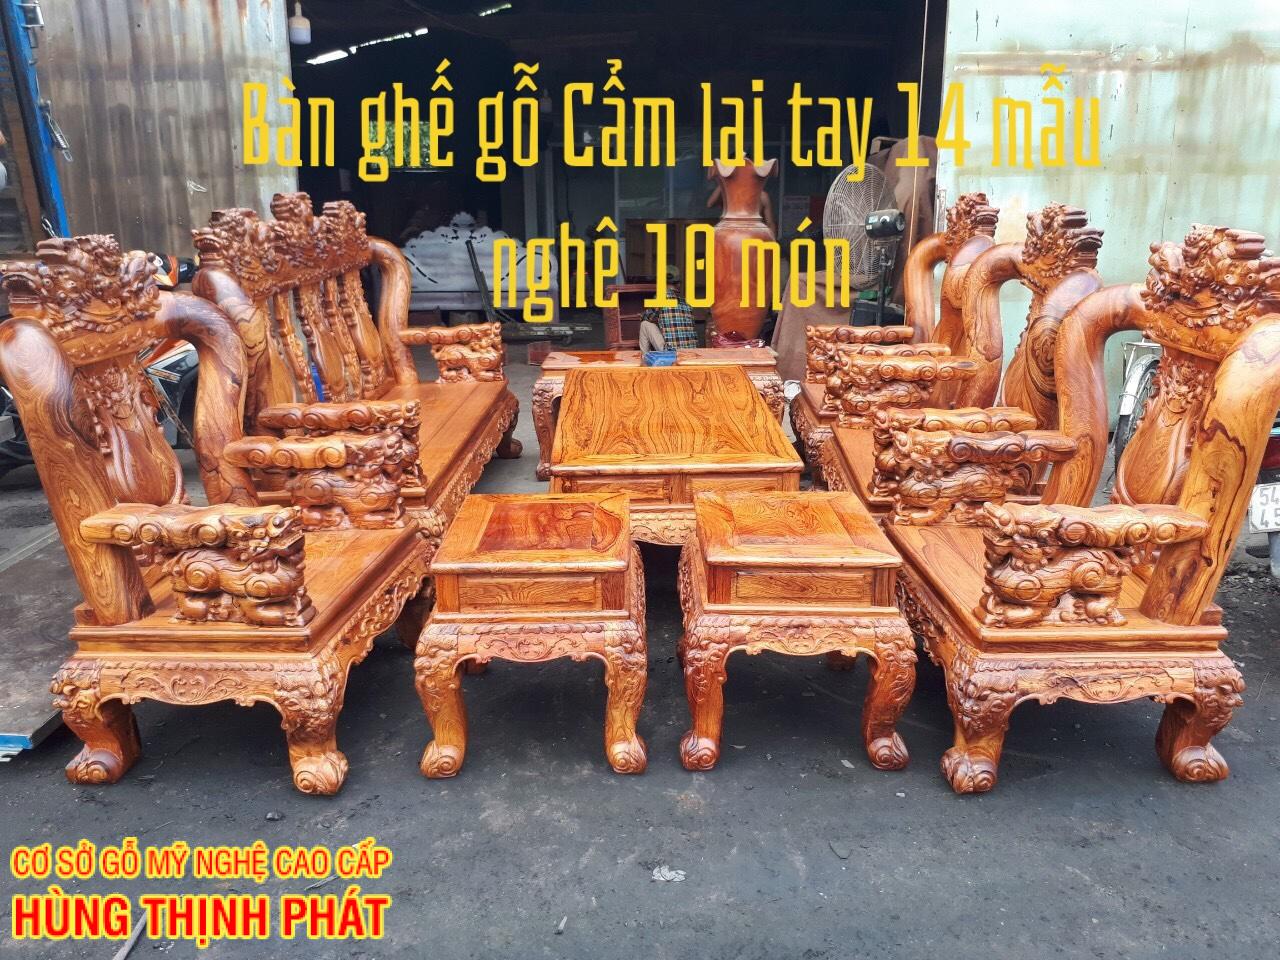 bàn ghế gỗ Cẩm Lai tay 14